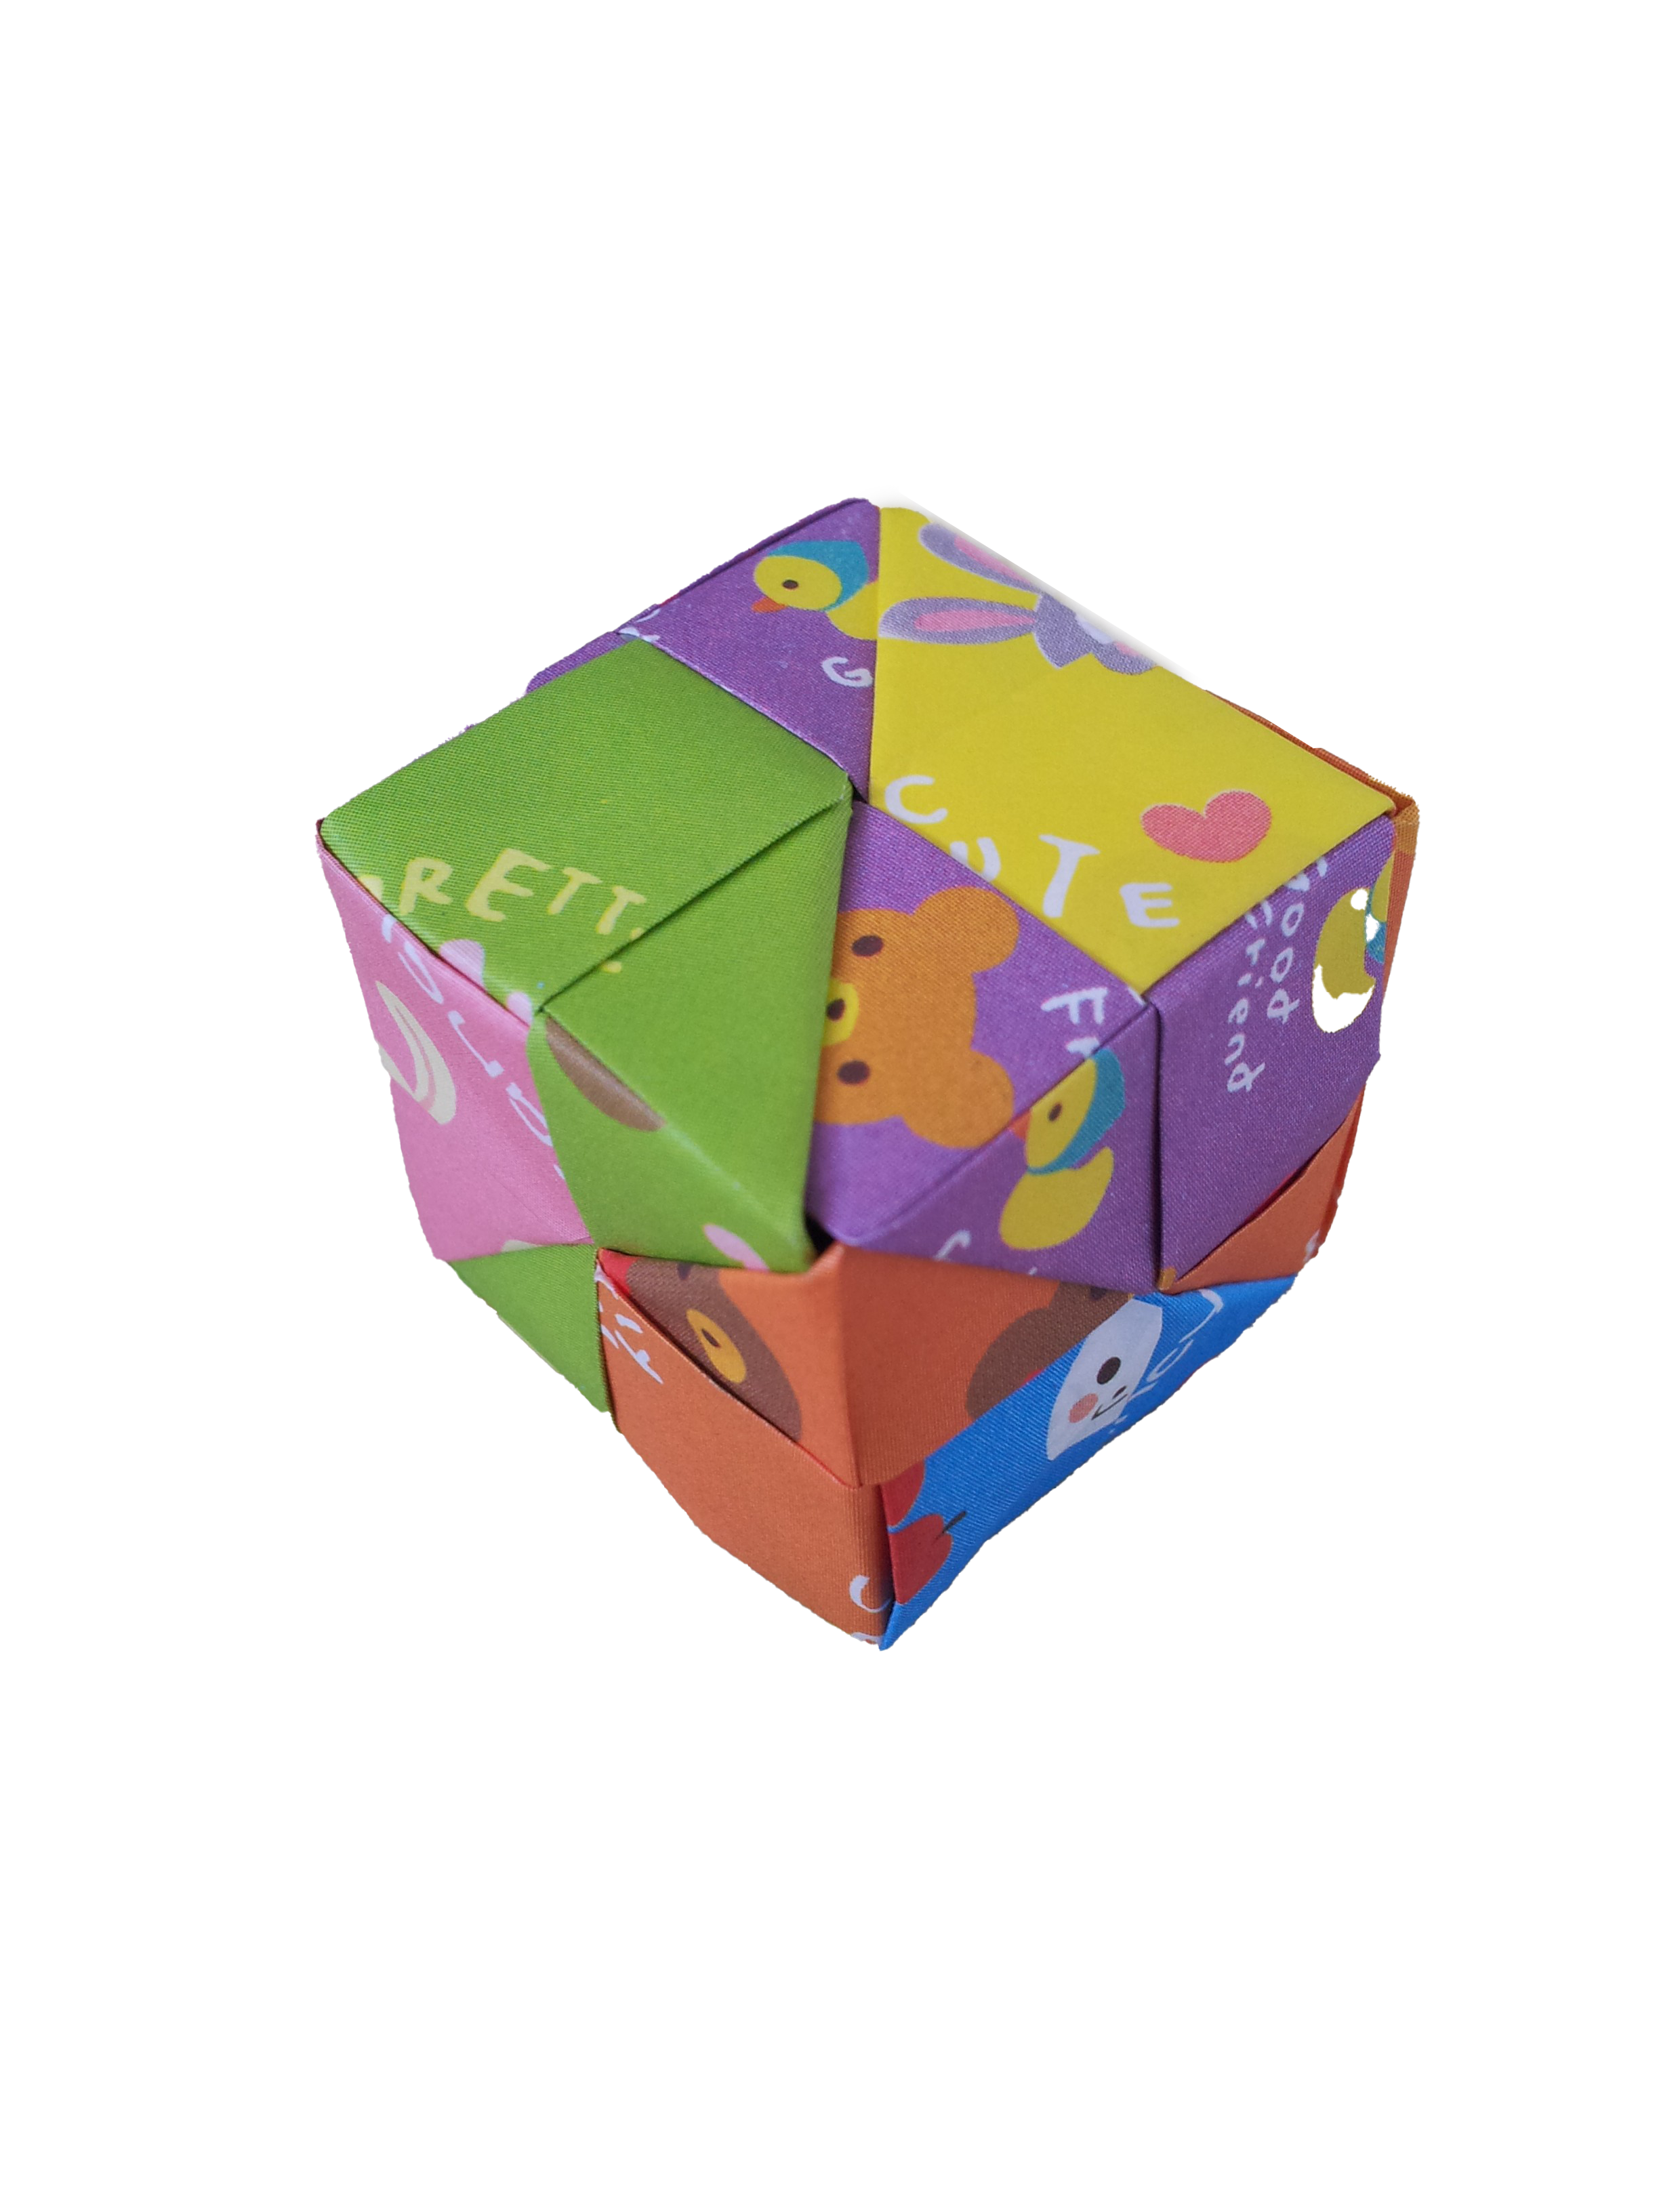 Origami Cube PNG изображения фон